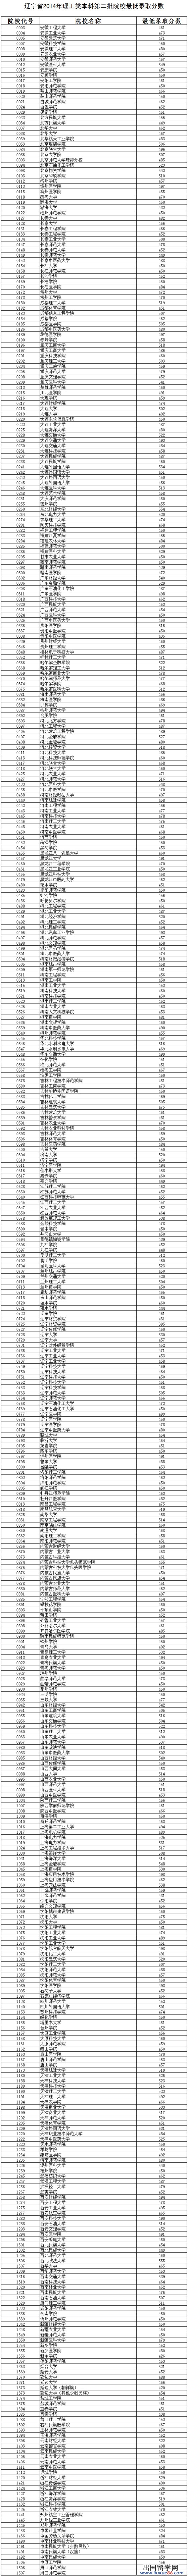 辽宁省2014年理工类本科第二批院校最低录取分数